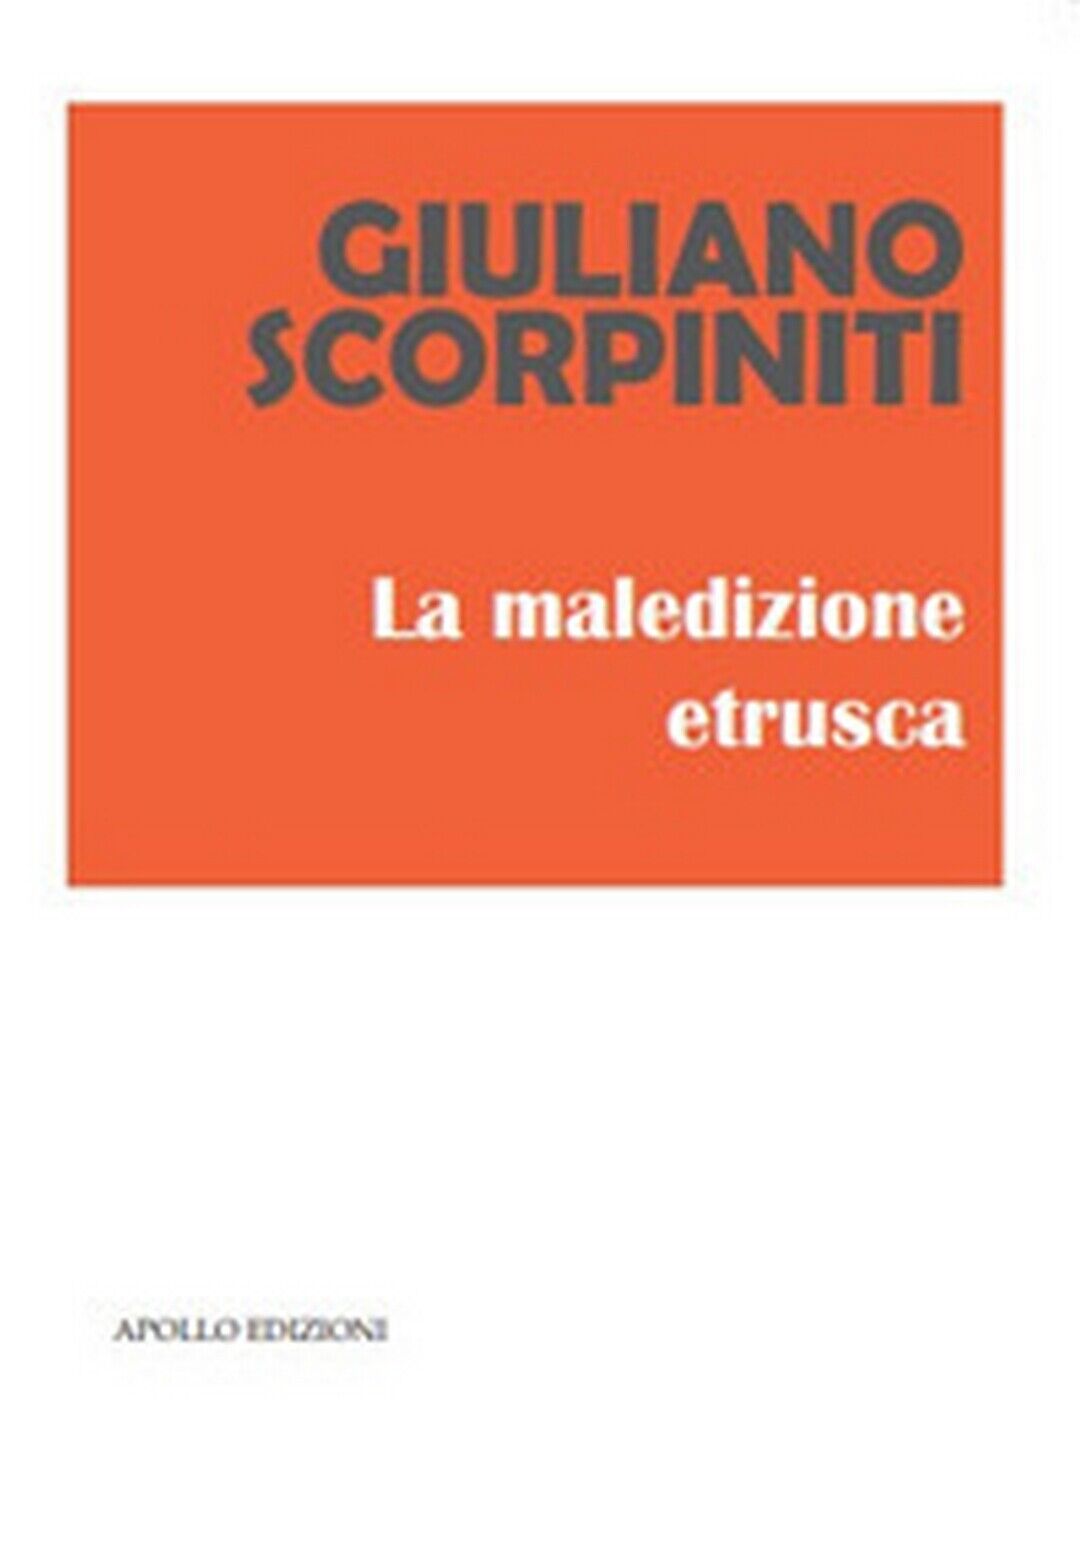 La maledizione etrusca  di Giuliano Scorpiniti,  2019,  Apollo Edizioni libro usato